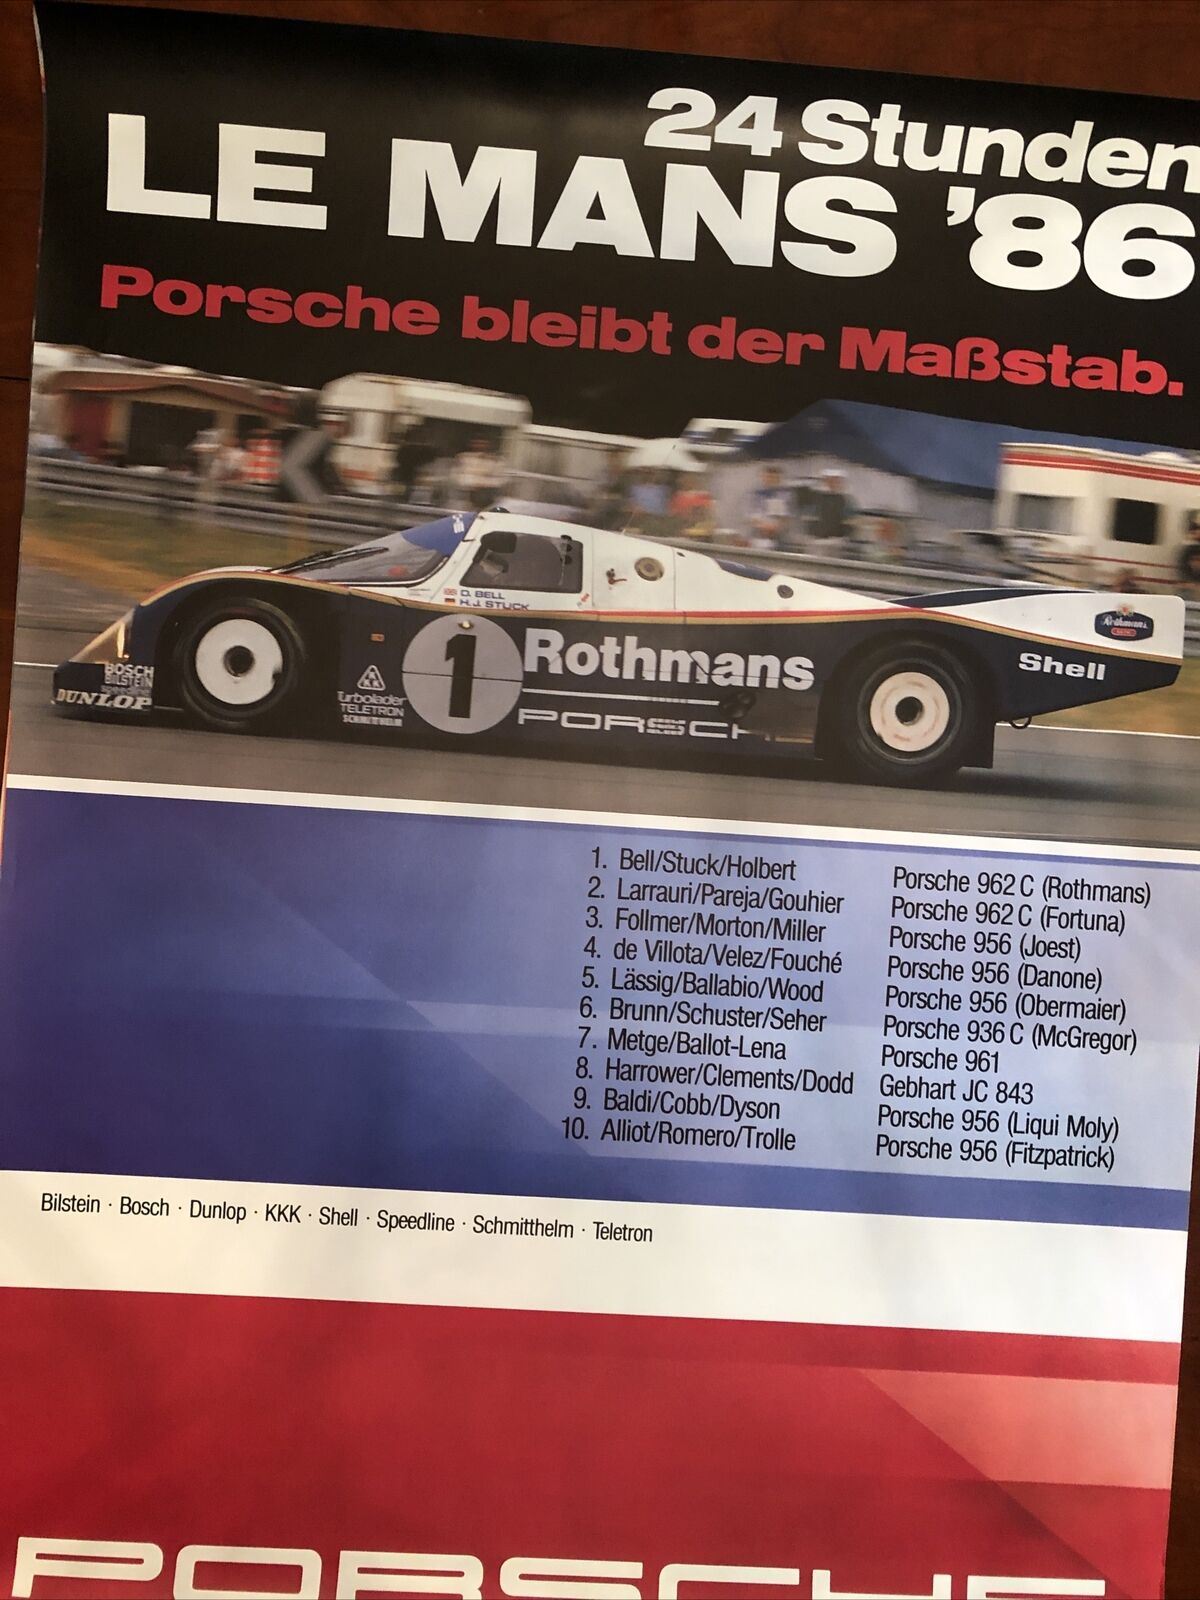 Awesome FACTORY  Porsche Poster 24 studen Lemans 86 bleibt der manstabl